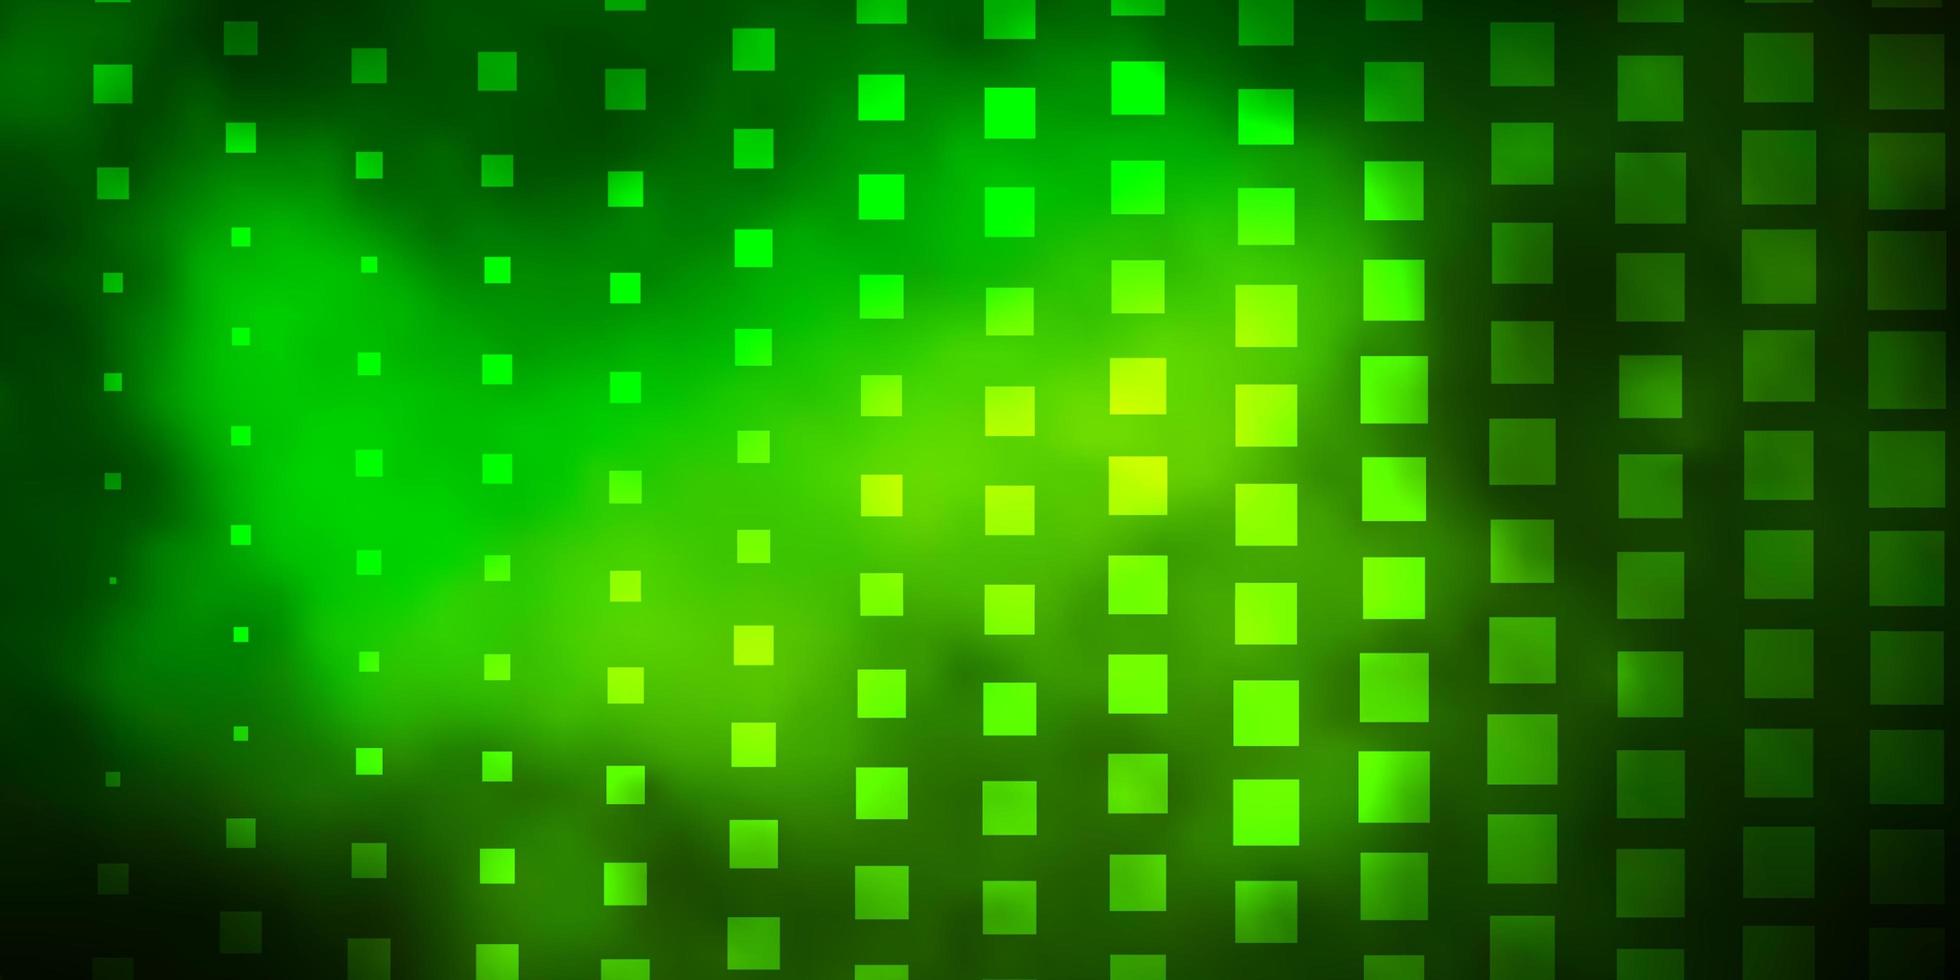 padrão de vetor verde escuro em estilo quadrado. ilustração gradiente abstrata com retângulos coloridos. padrão para comerciais, anúncios.